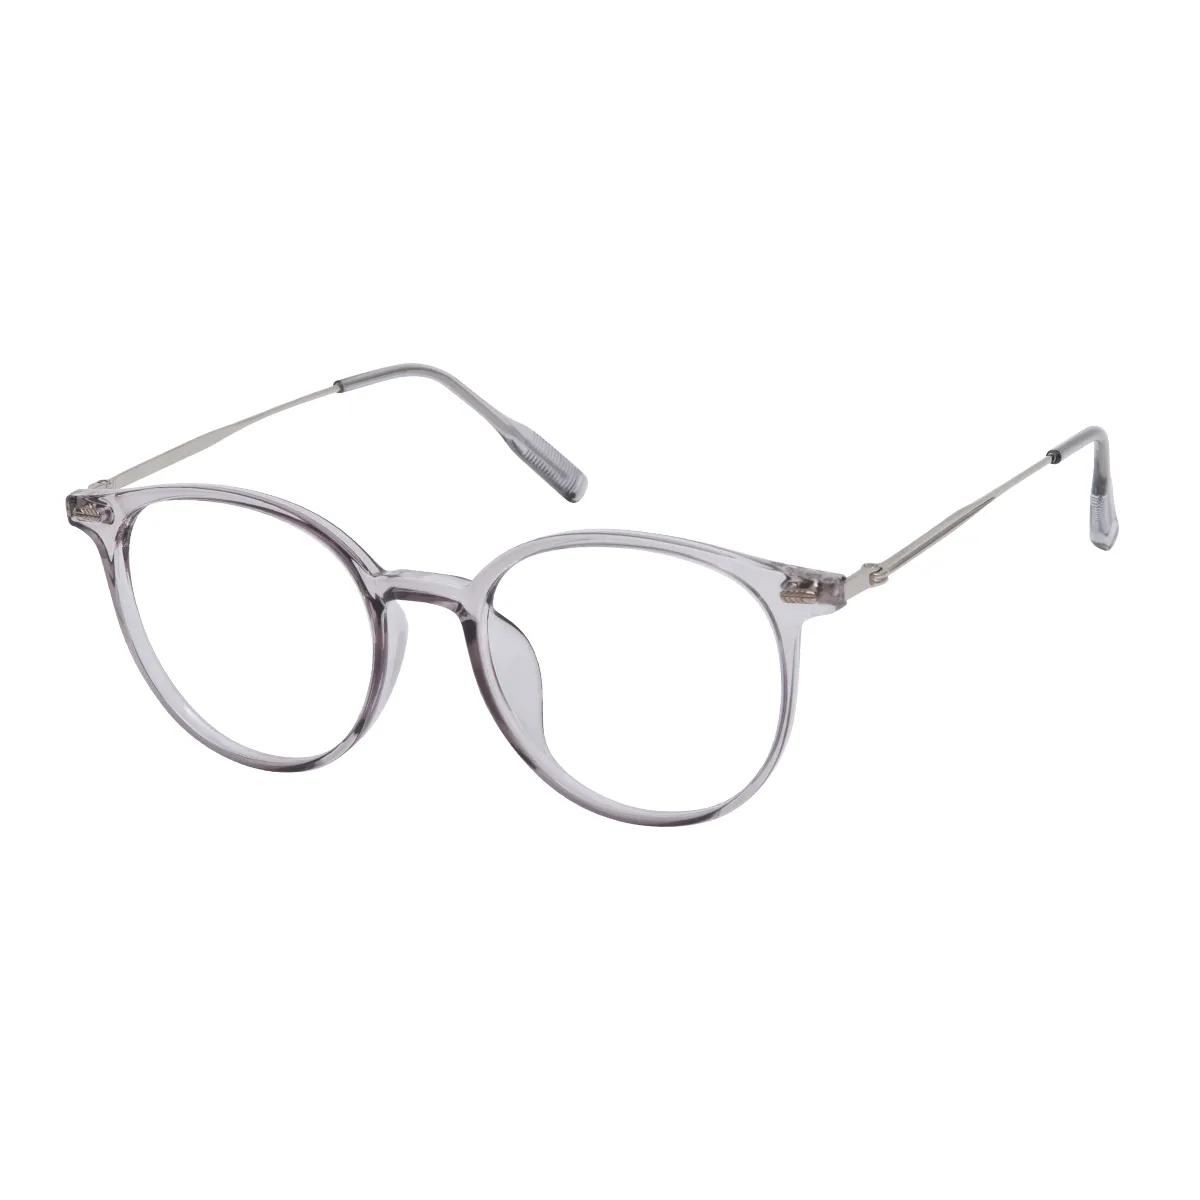 Skylar - Round Translucent Gray Glasses for Men & Women